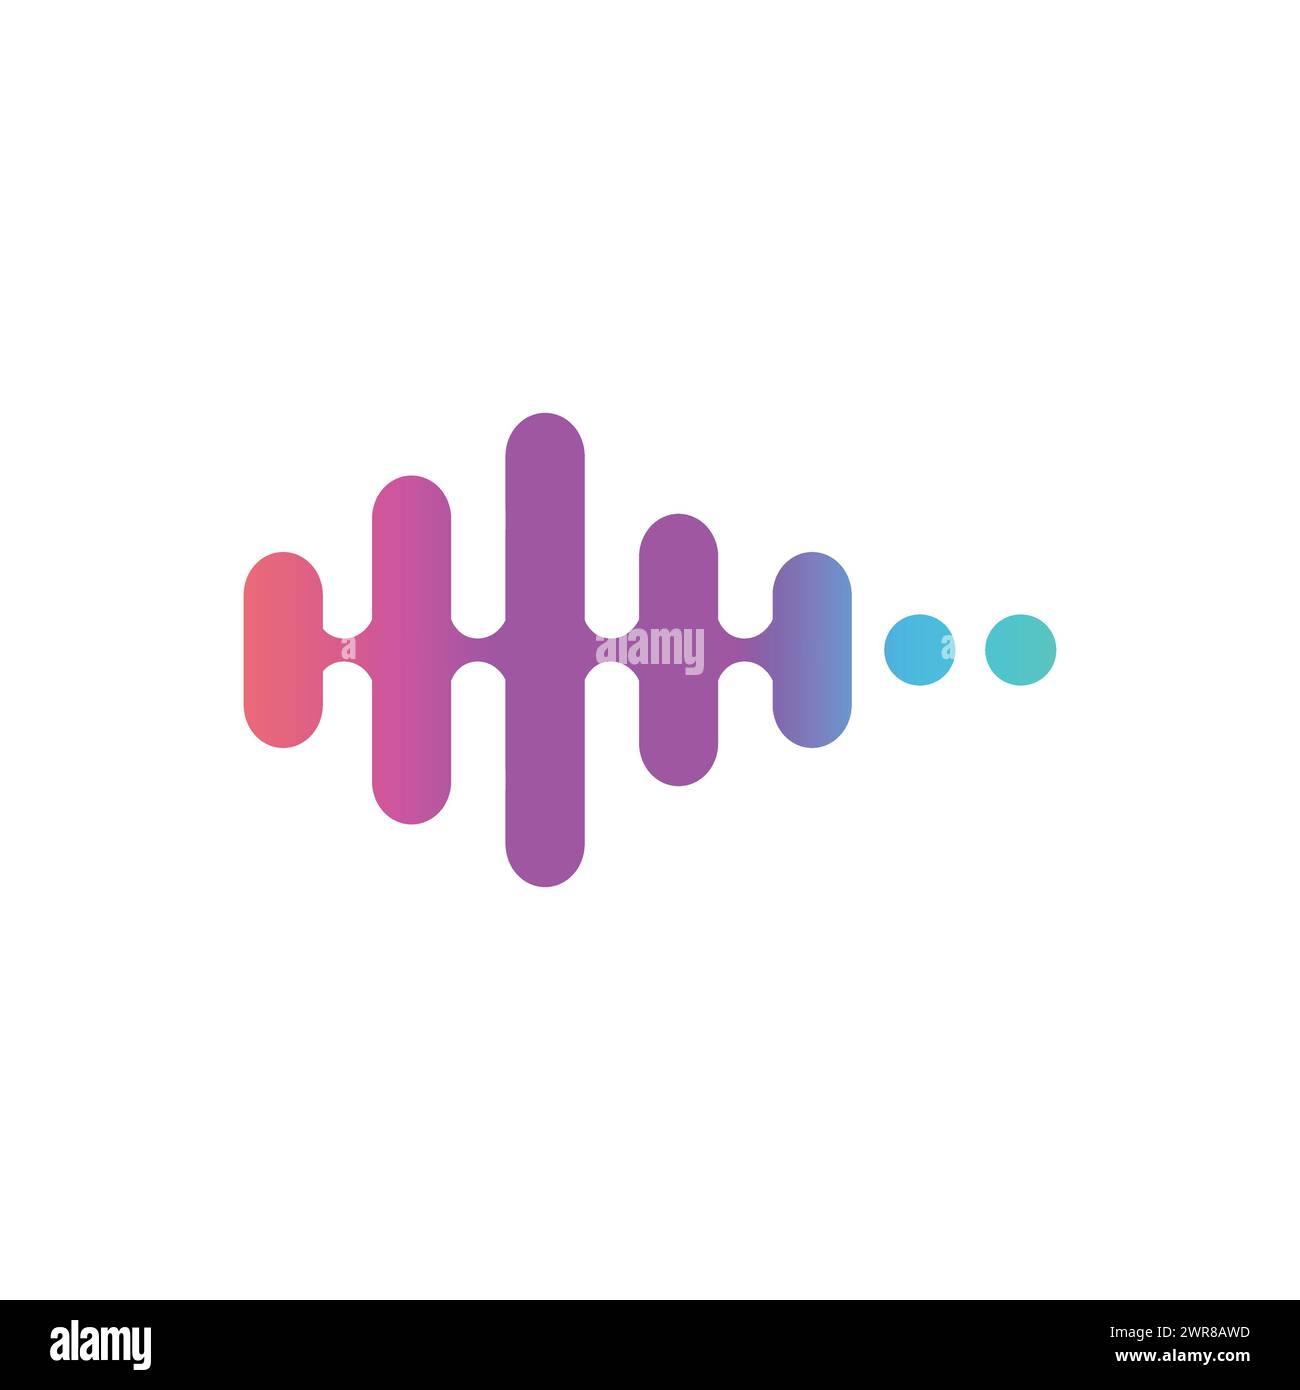 Logo de la musique avec syle d'art de ligne et concept moderne, moderne, dégradé, musique, design vecteur. Image vectorielle de conception de logo Sound wave Illustration de Vecteur